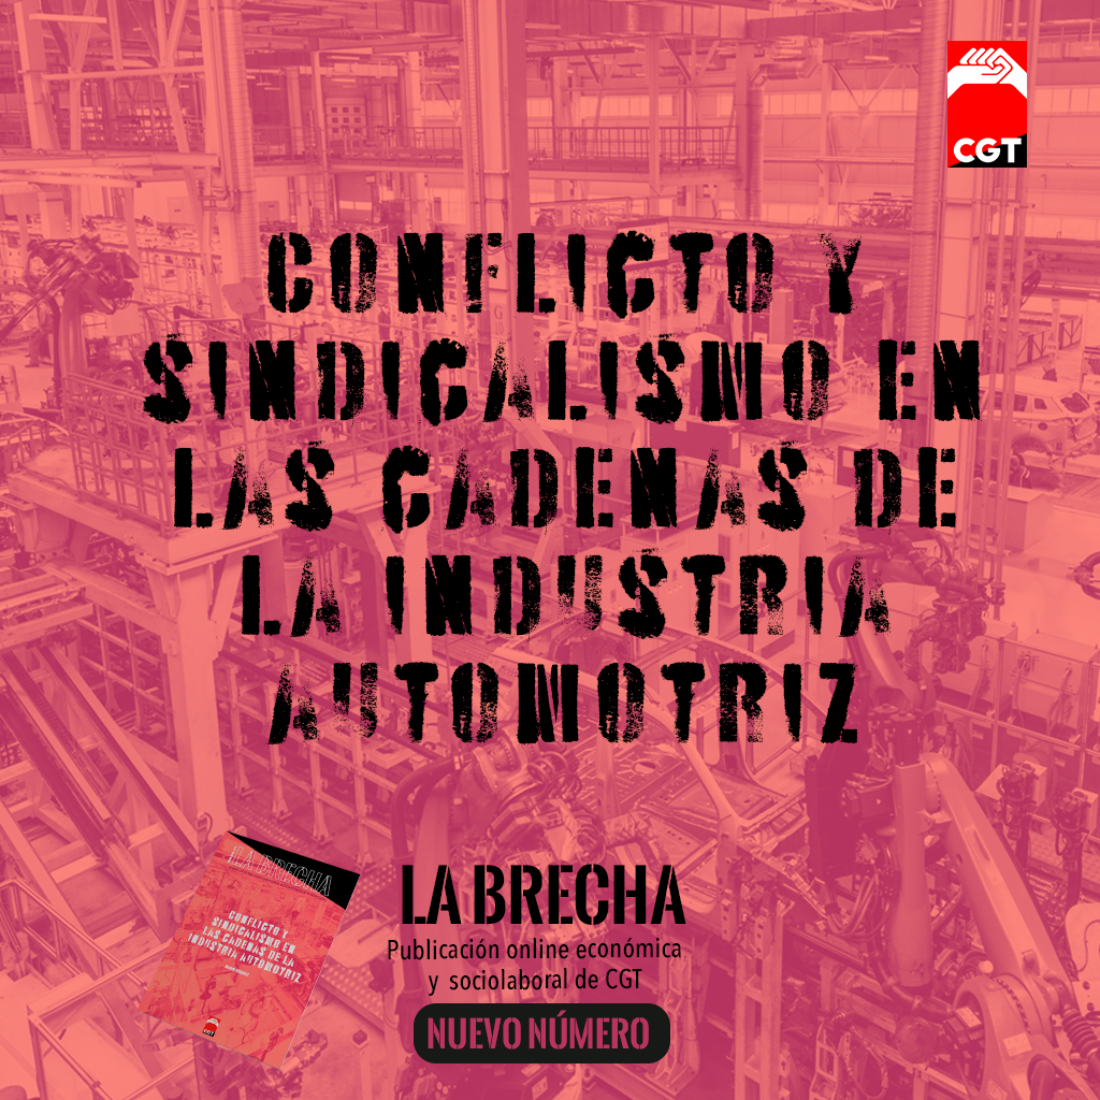 CGT presenta el octavo número de ‘La Brecha’, dedicado a la acción sindical en la industria automotriz